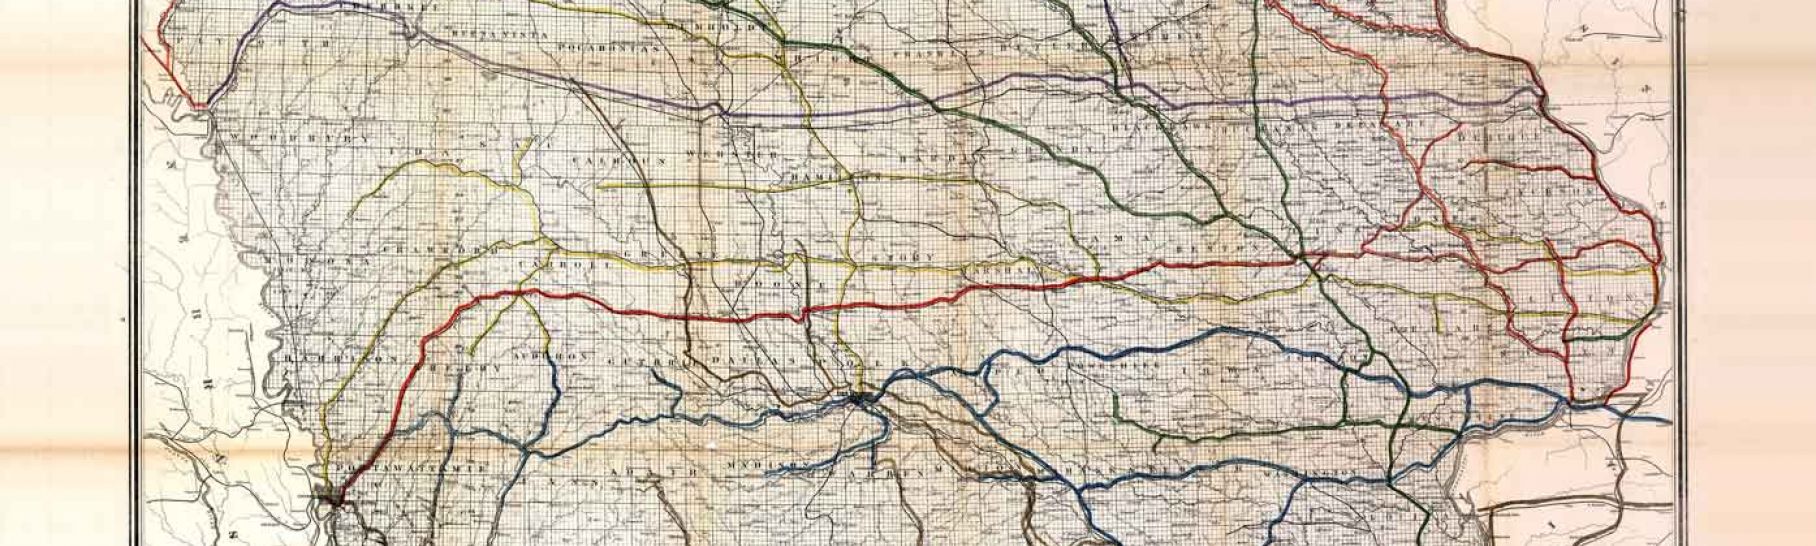 1881 Railroad Map of Iowa